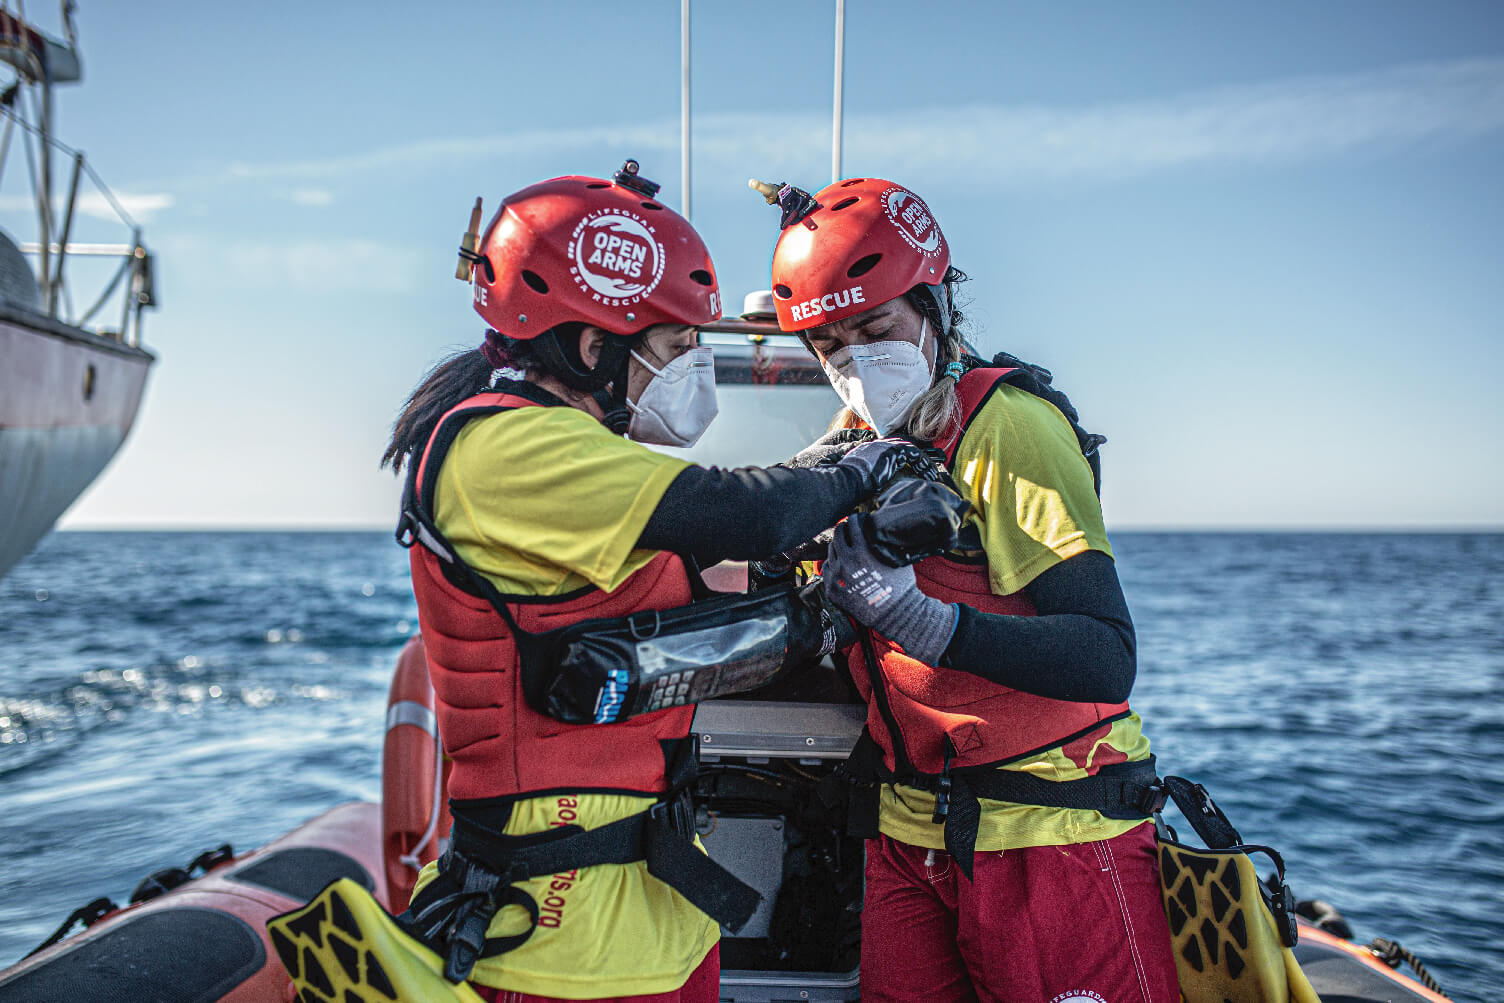 ONG de rescate en el mar denuncian la inacción de la UE y Grecia: Son tragedias evitables